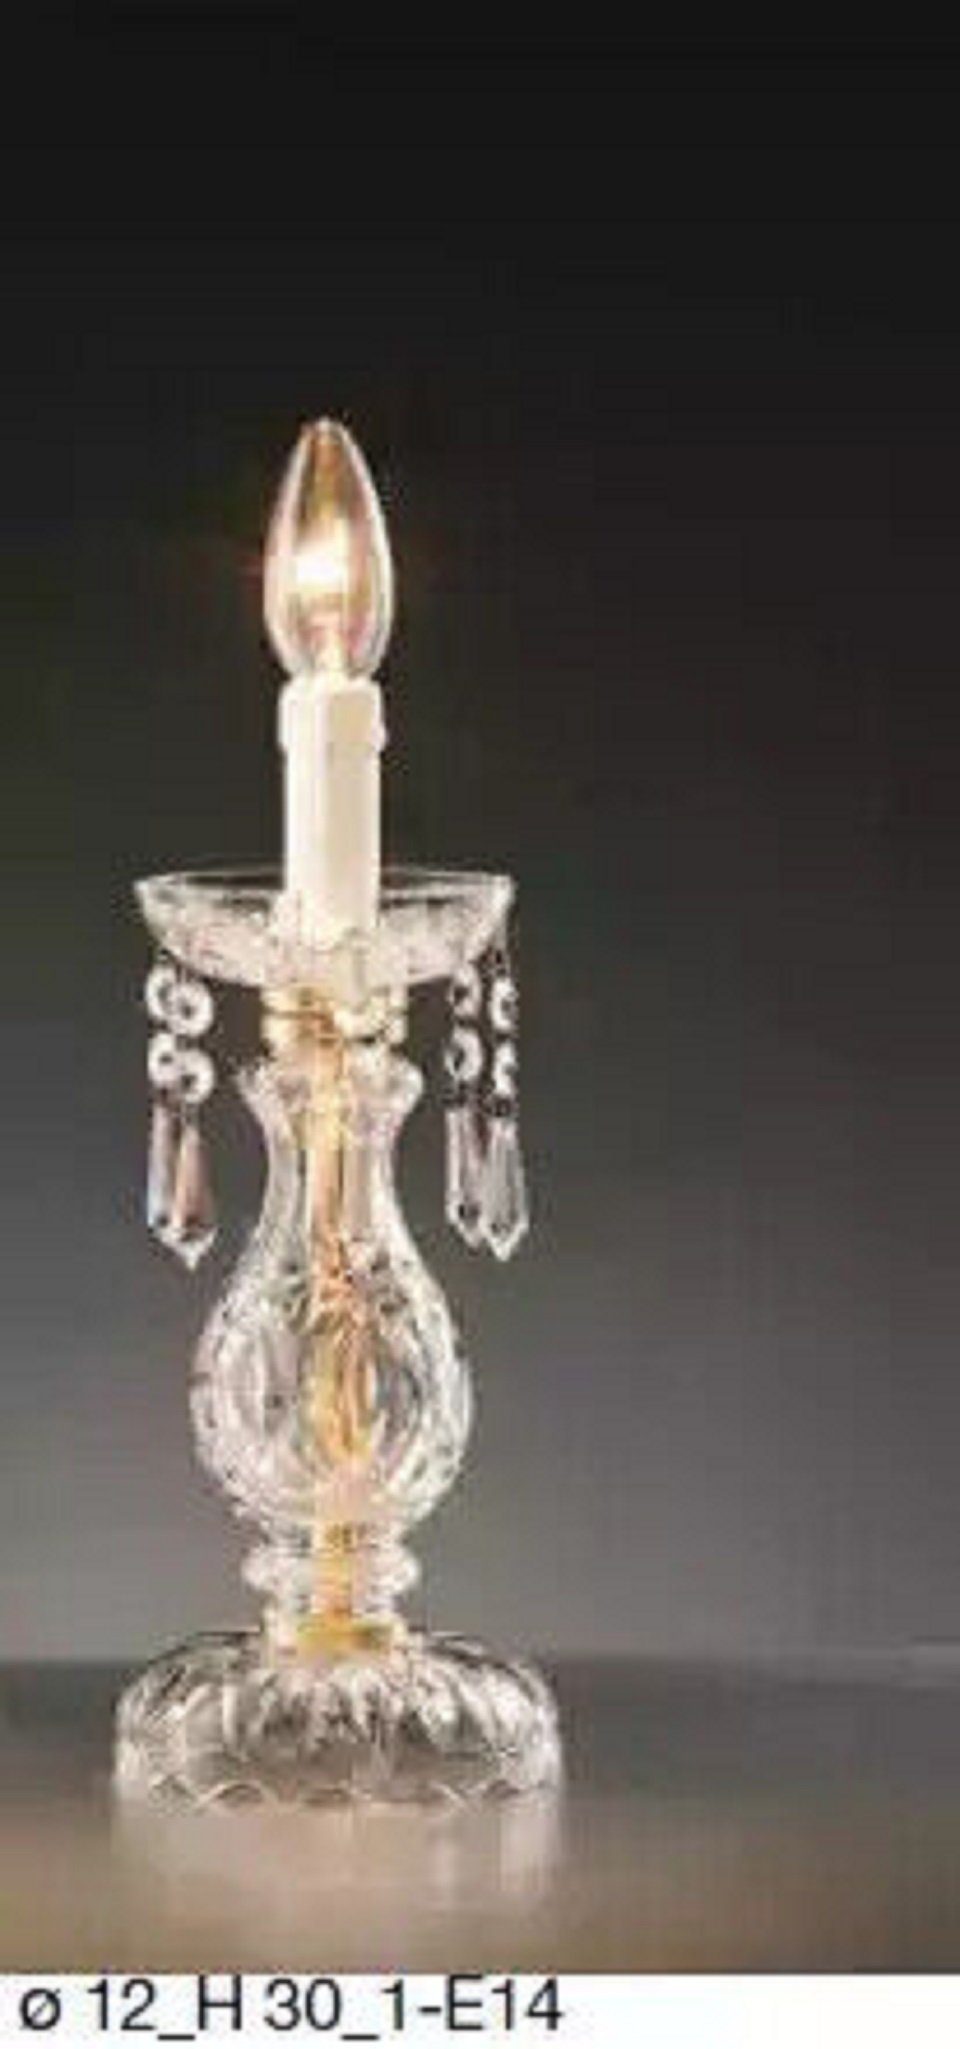 JVmoebel Tischleuchte Stilvolle Tischlampe Antik Stil Einrichtung Luxus Kerzenlampe Kristall, Leuchtmittel wechselbar, Made in Italy